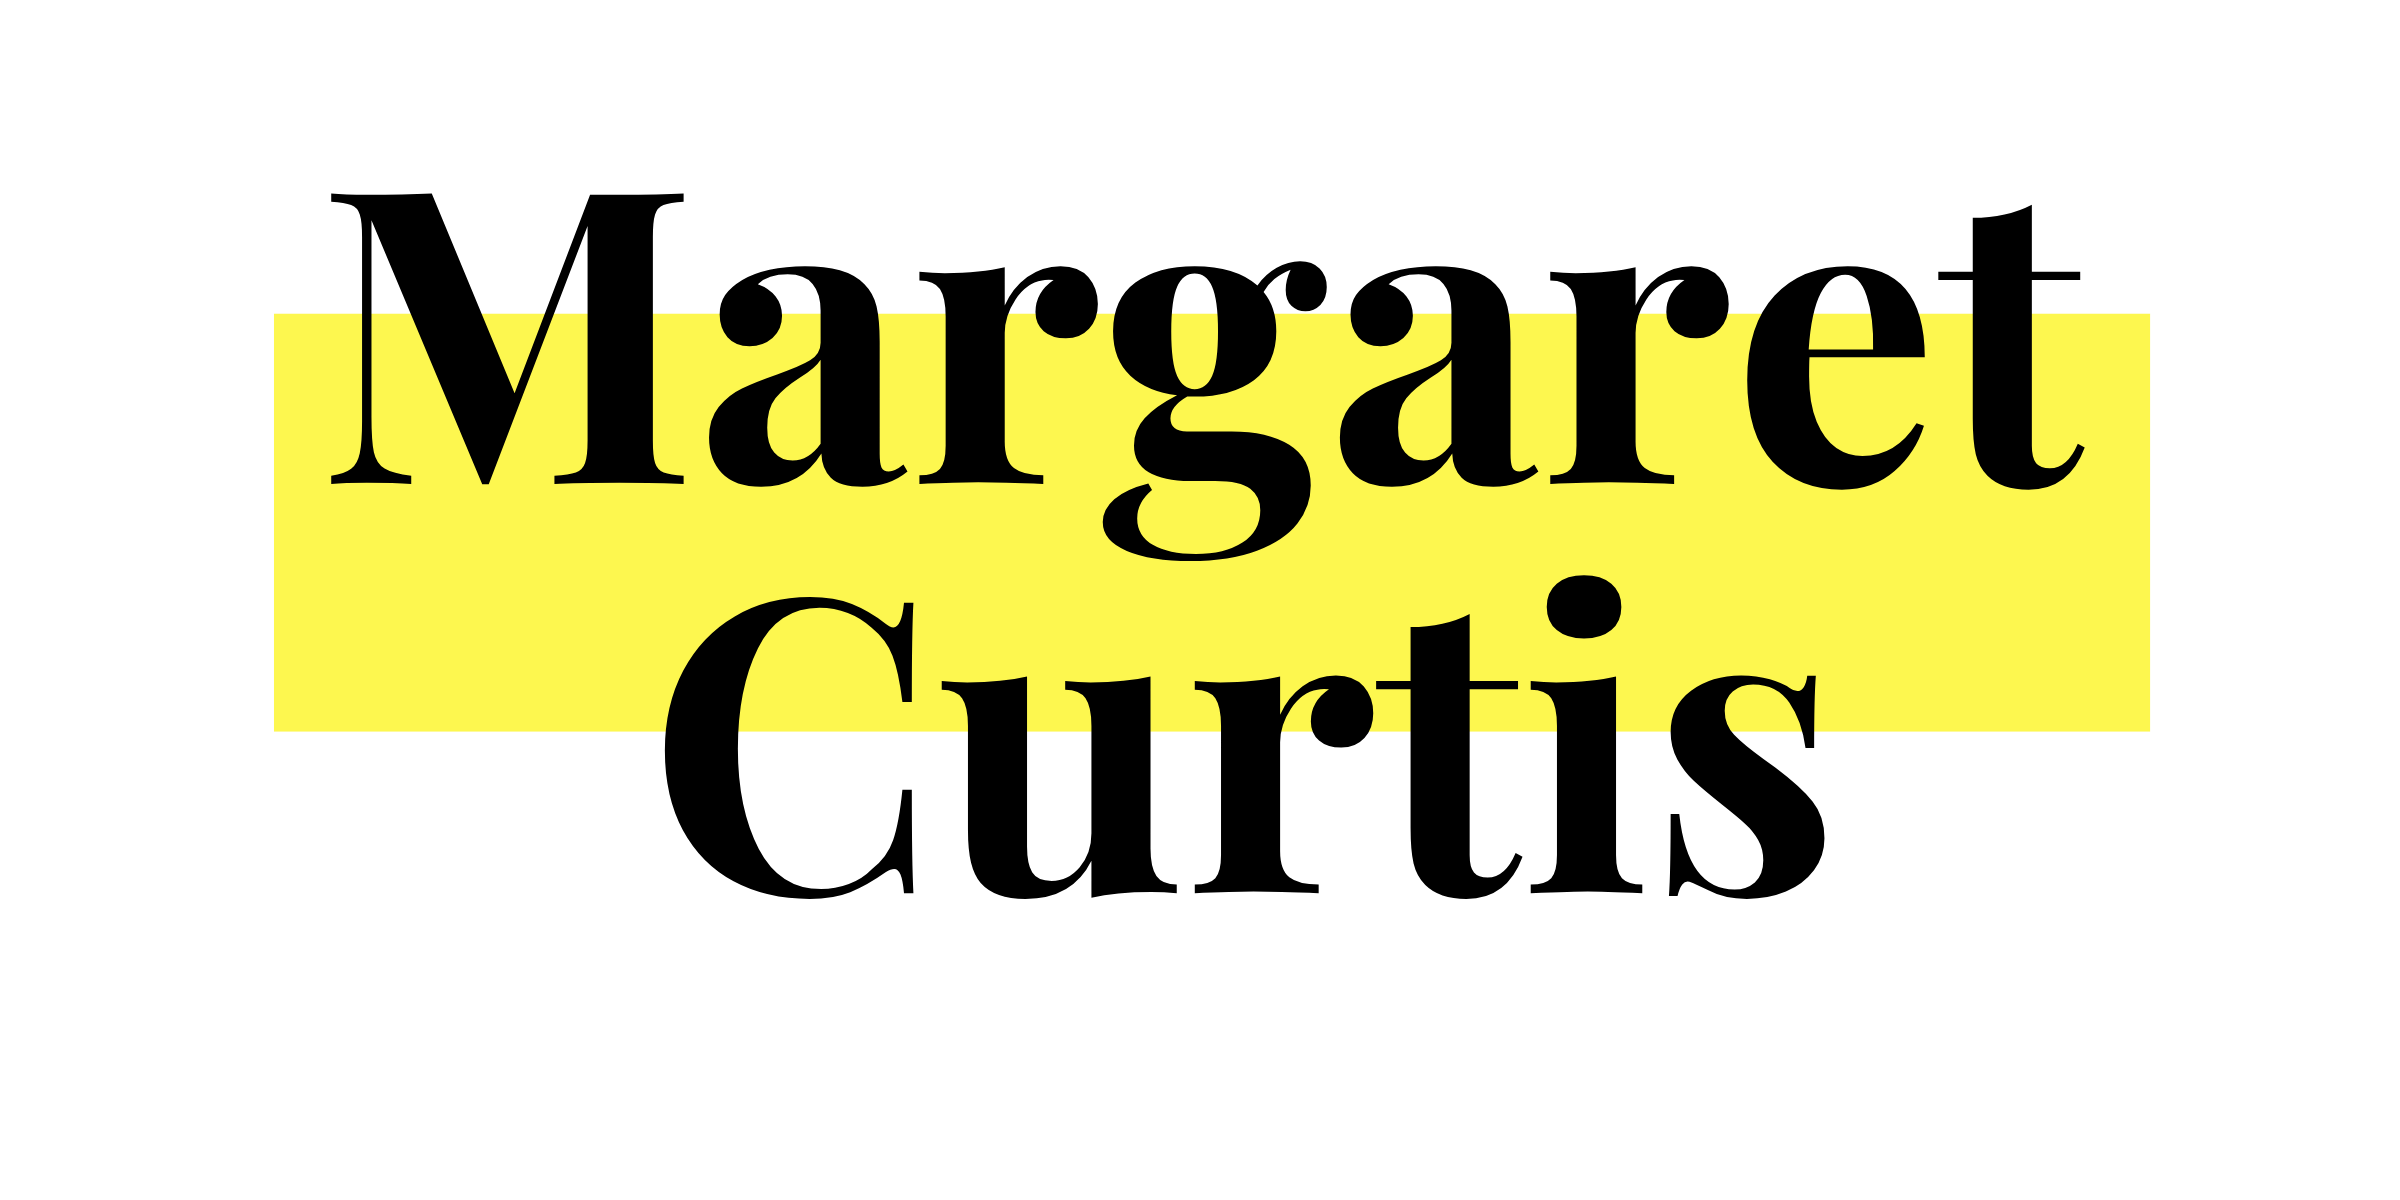 margaret-curtis-logo